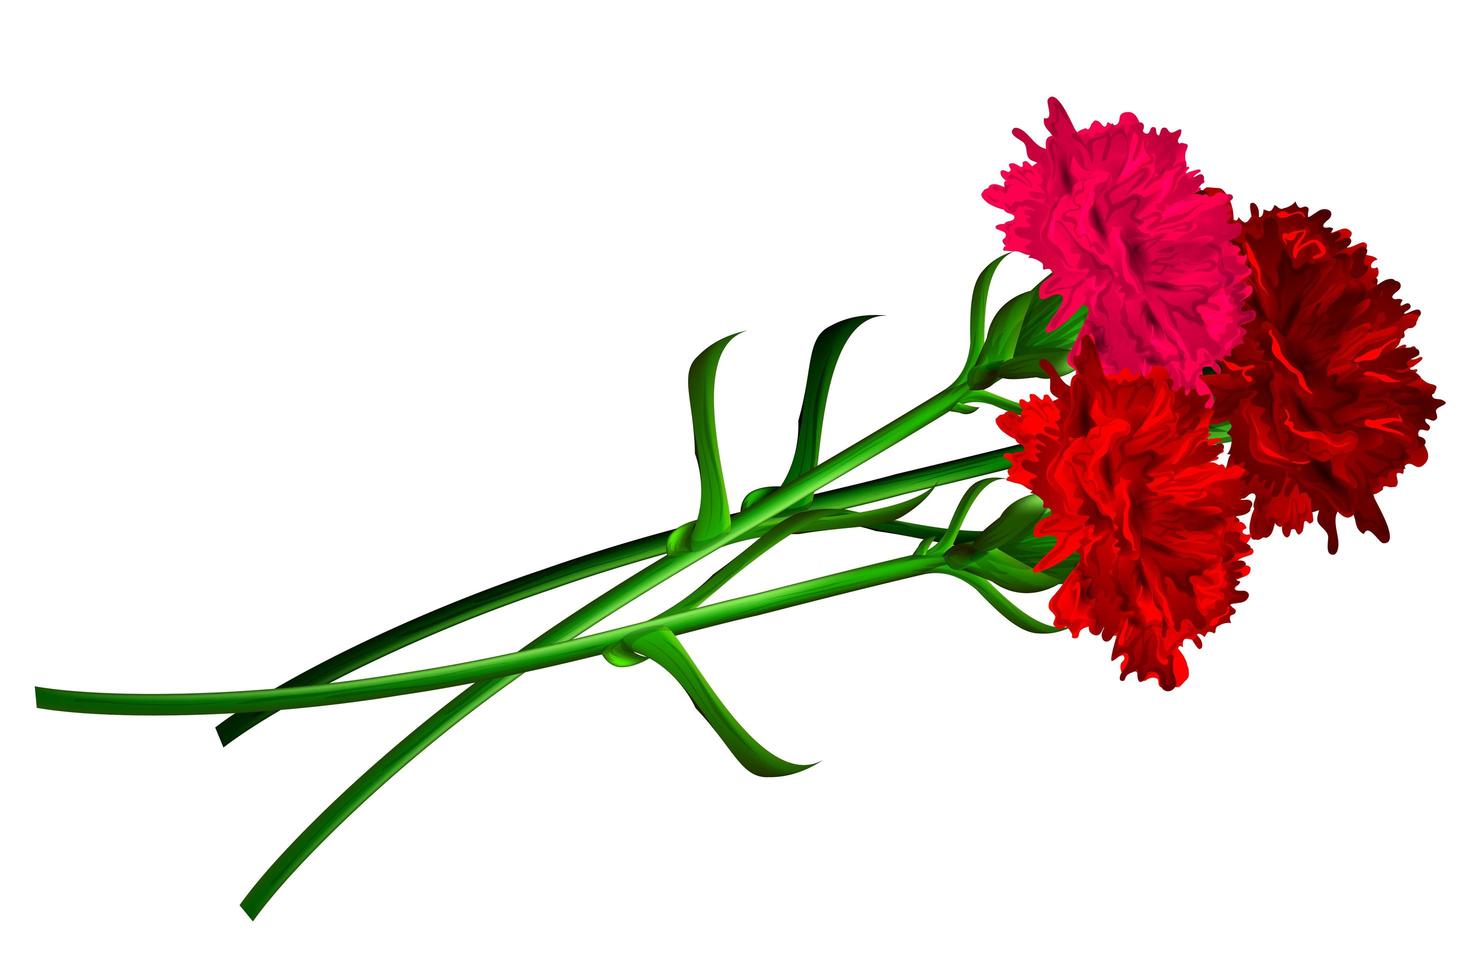 fiore di garofano rosso isolato su sfondo bianco vettore